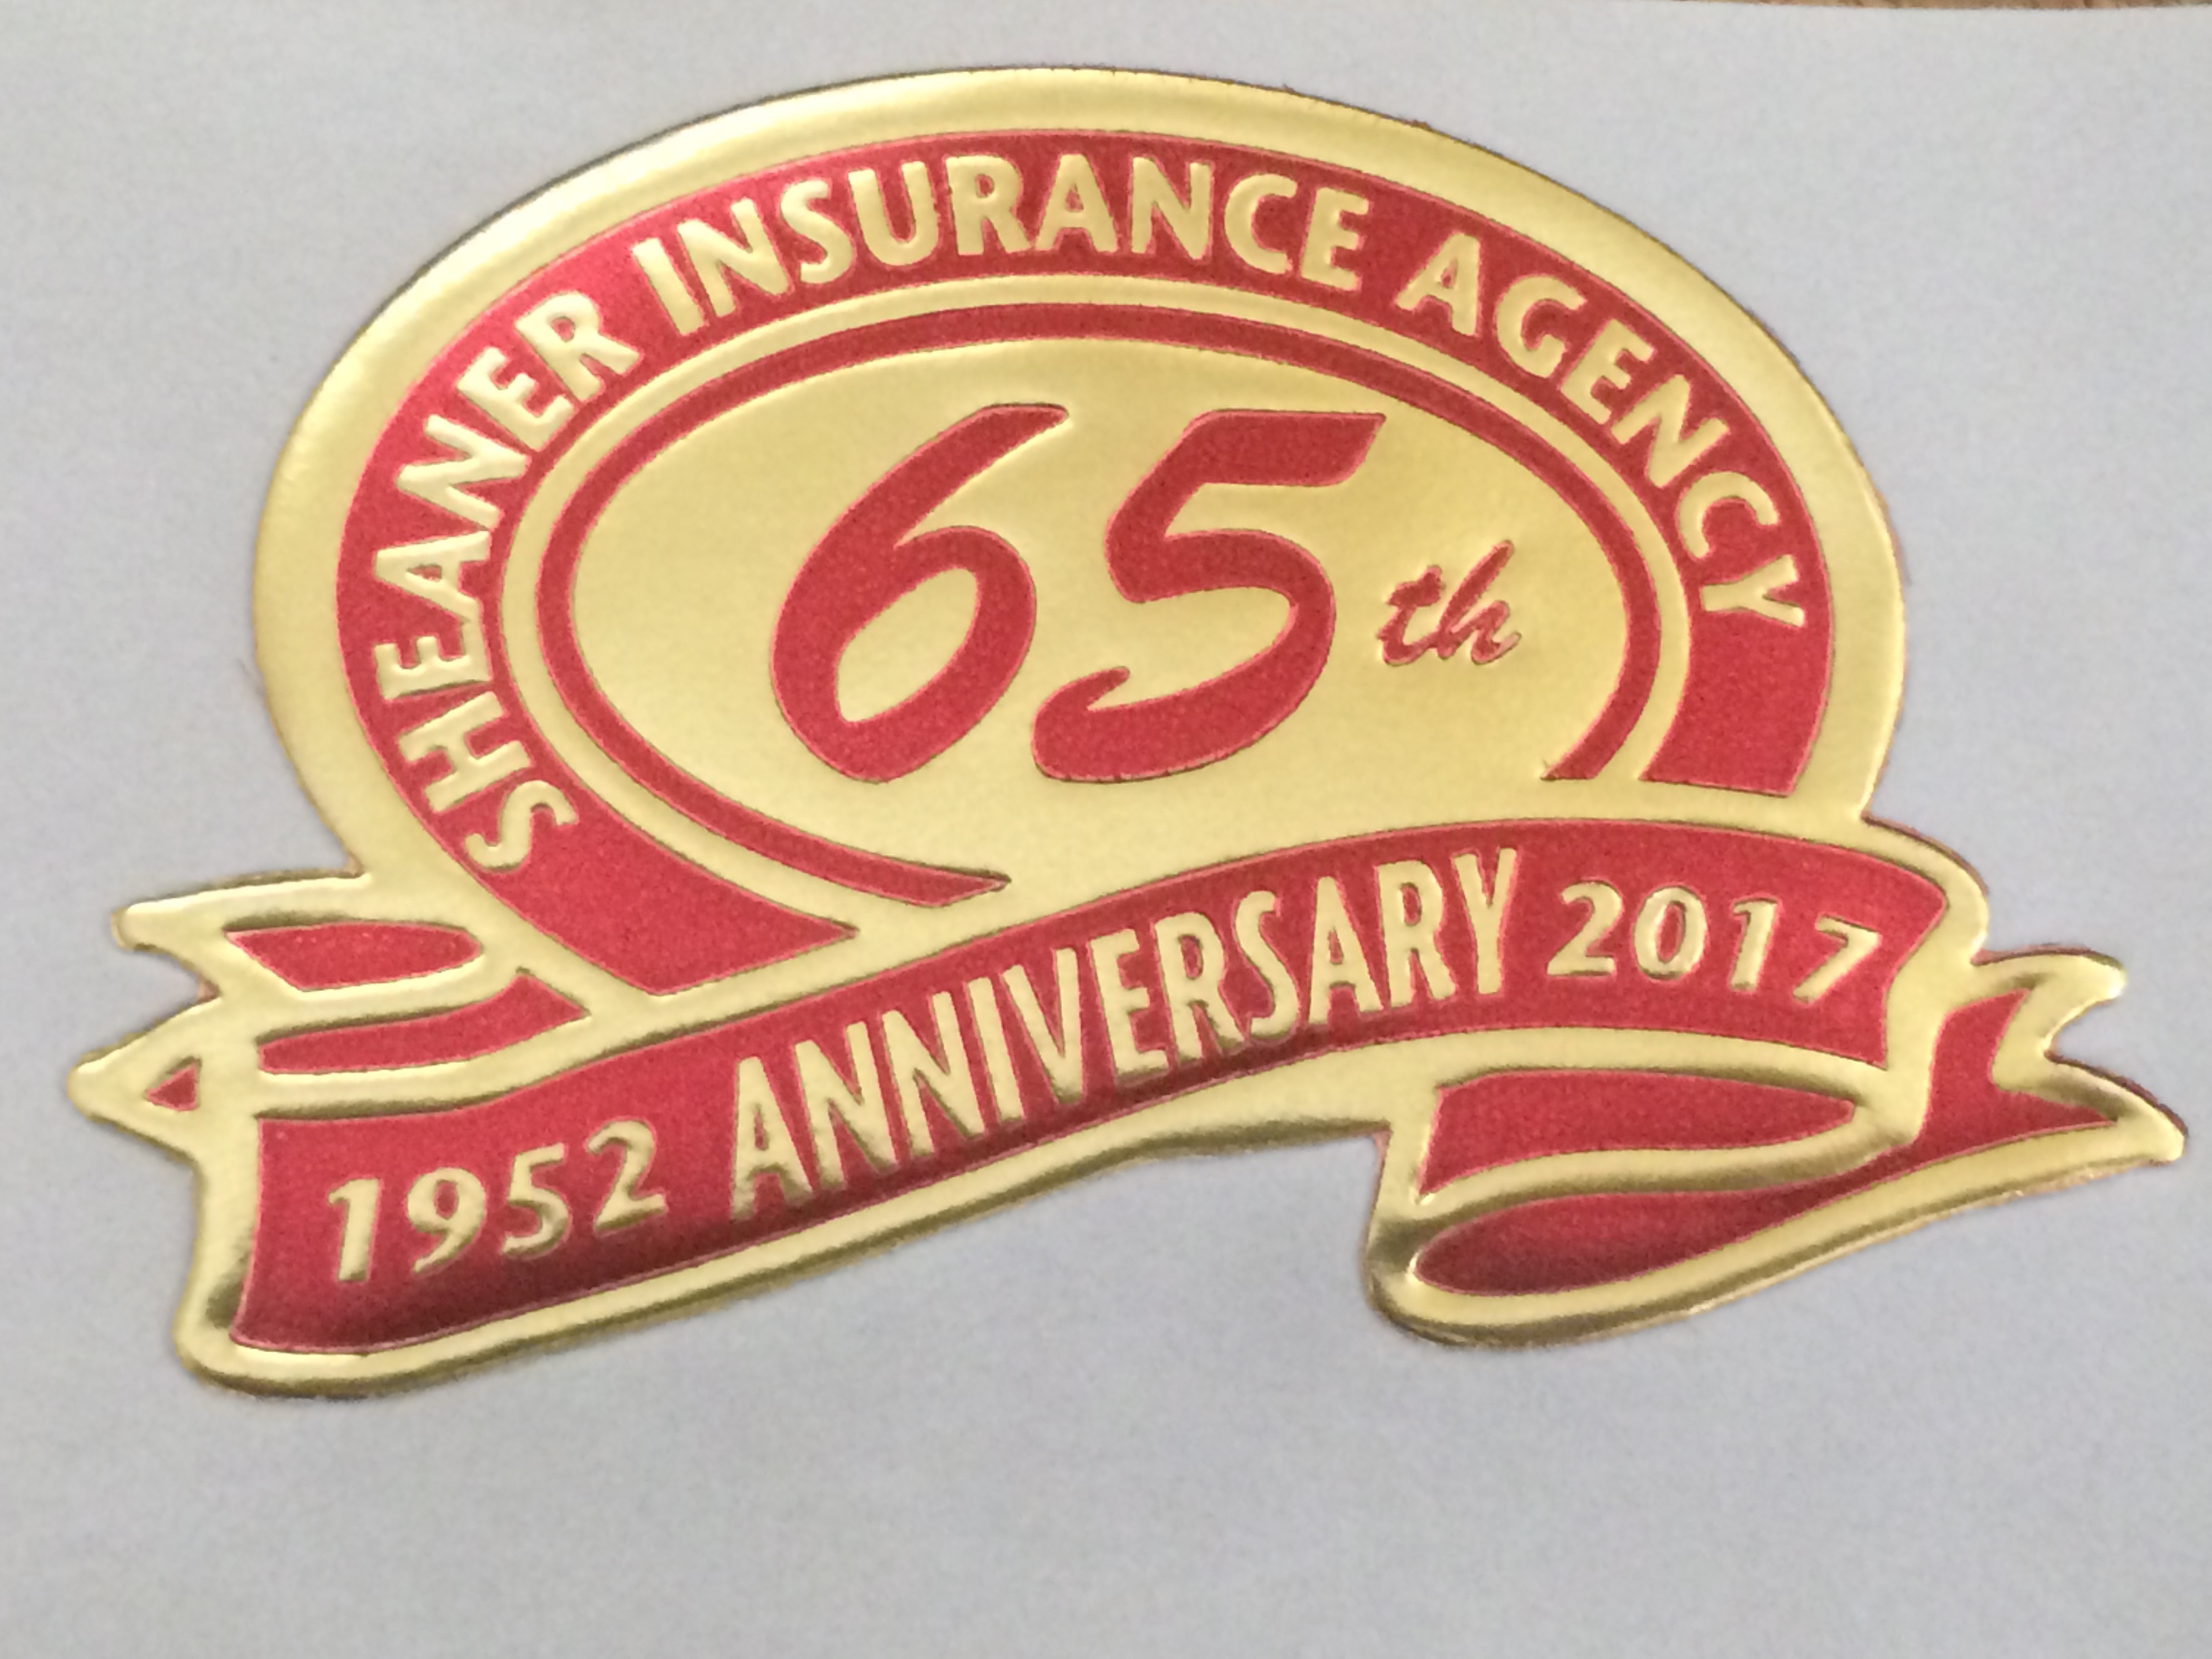 Sheaner Insurance Agency